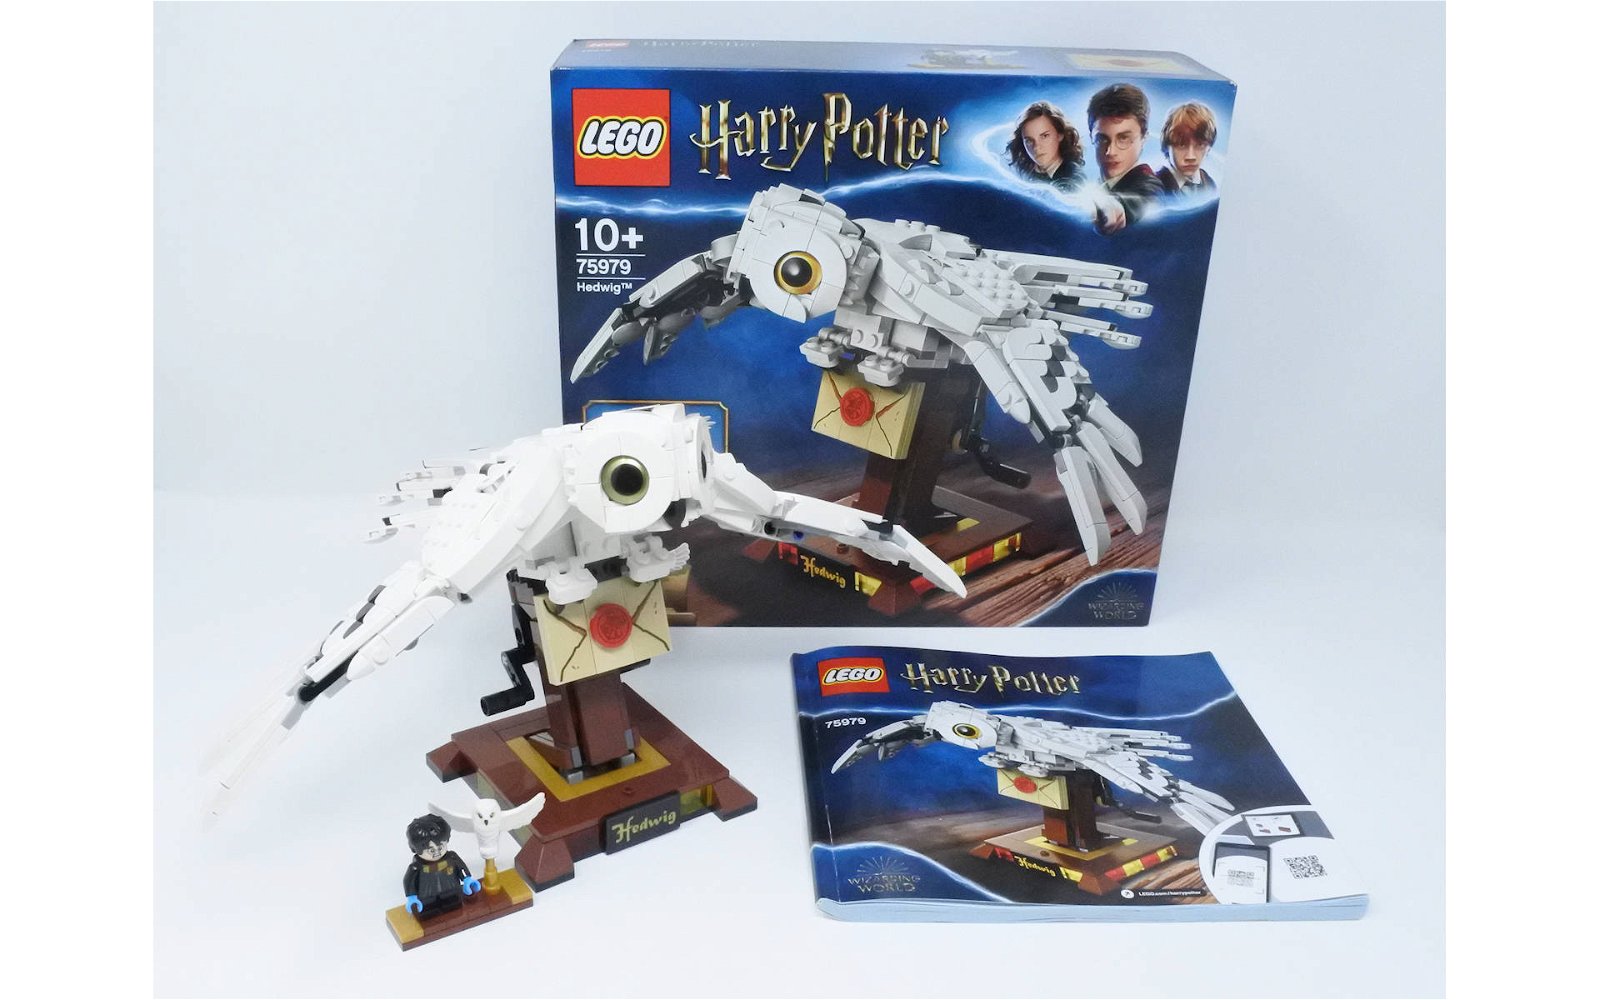 Immagine di Set LEGO Harry Potter # 75979 Edvige: la recensione